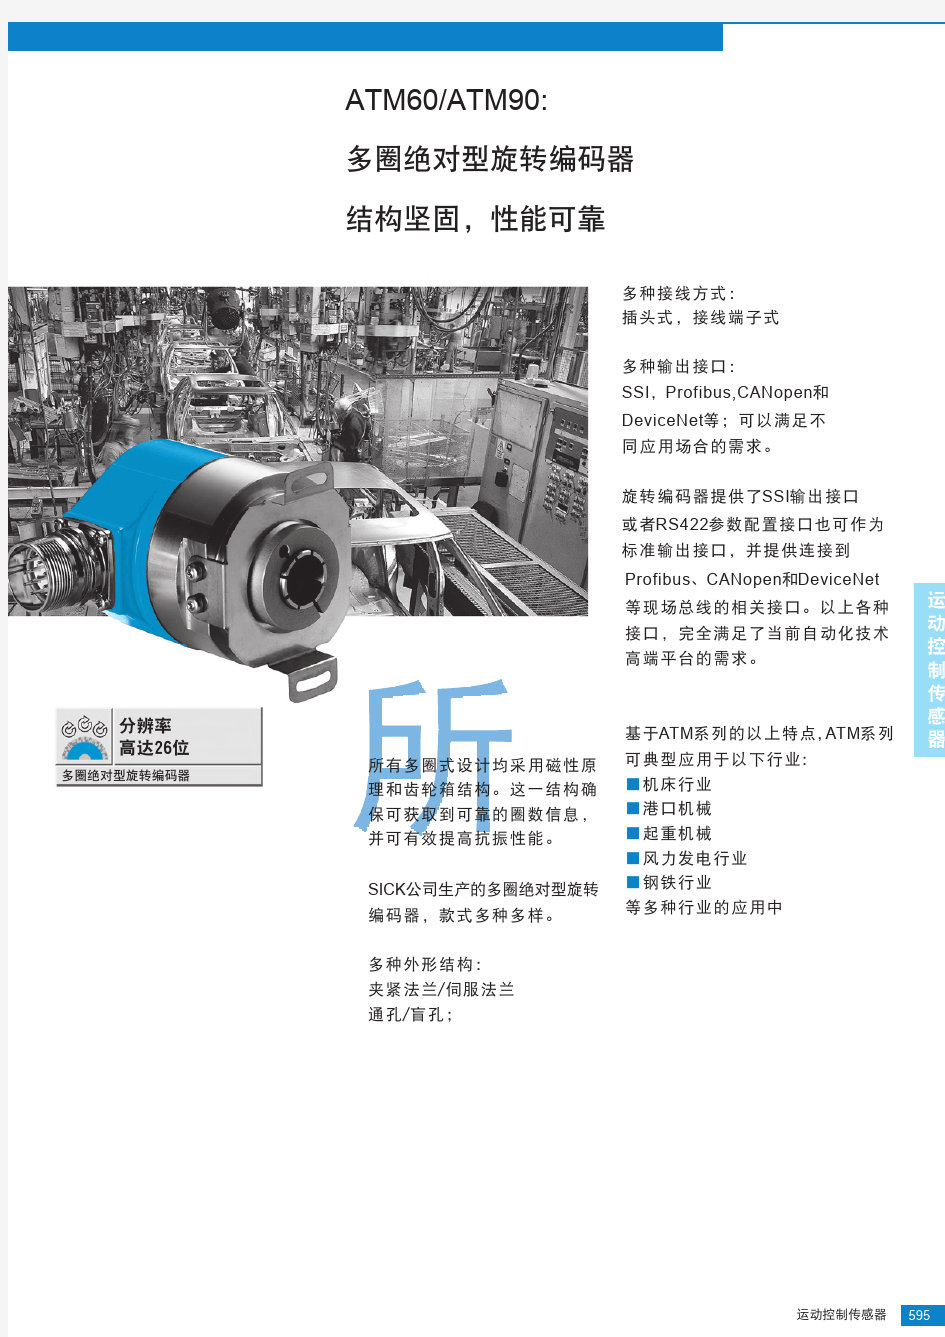 ATM60-90系列绝对值旋转编码器选型手册(中文版)